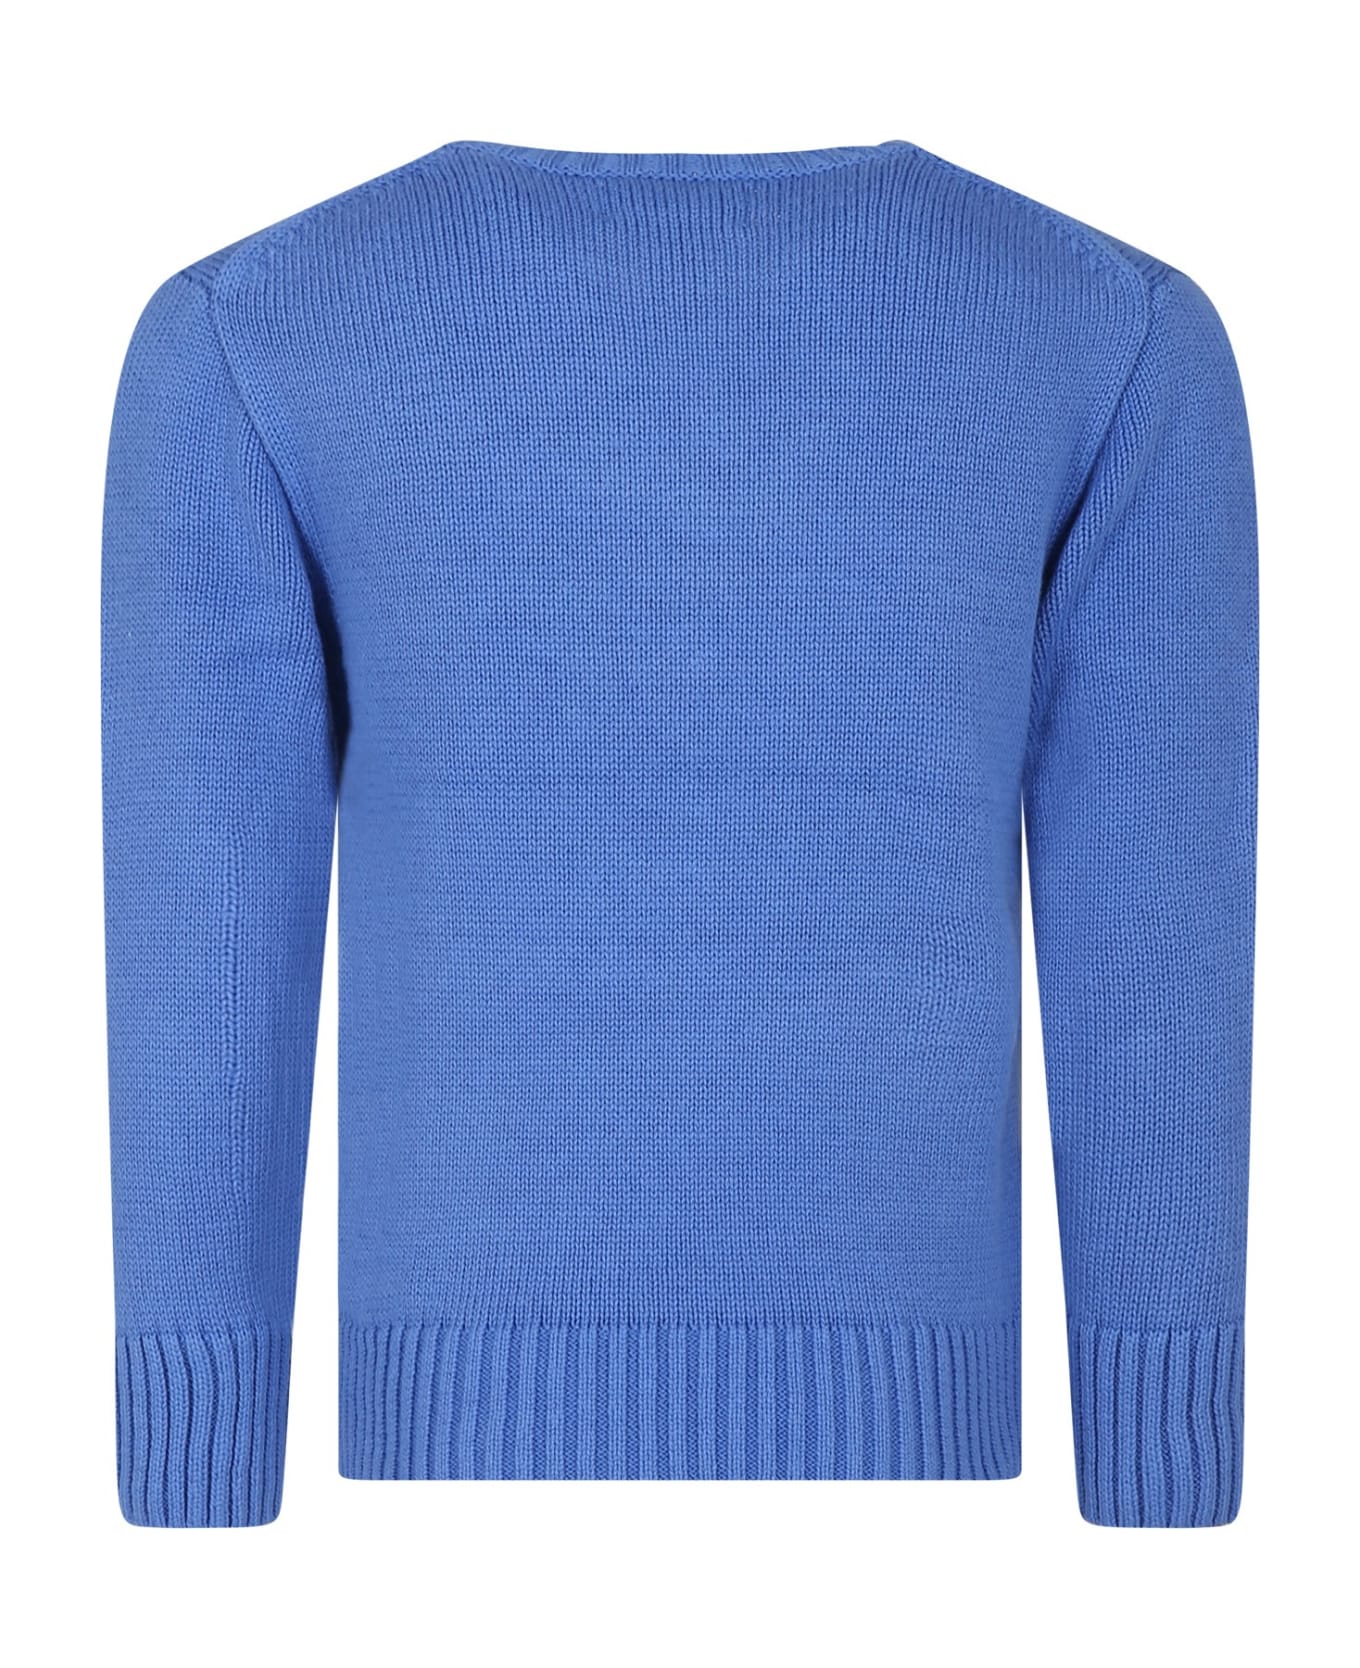 Ralph Lauren Light Blue Sweater For Boy With Dog - Light Blue